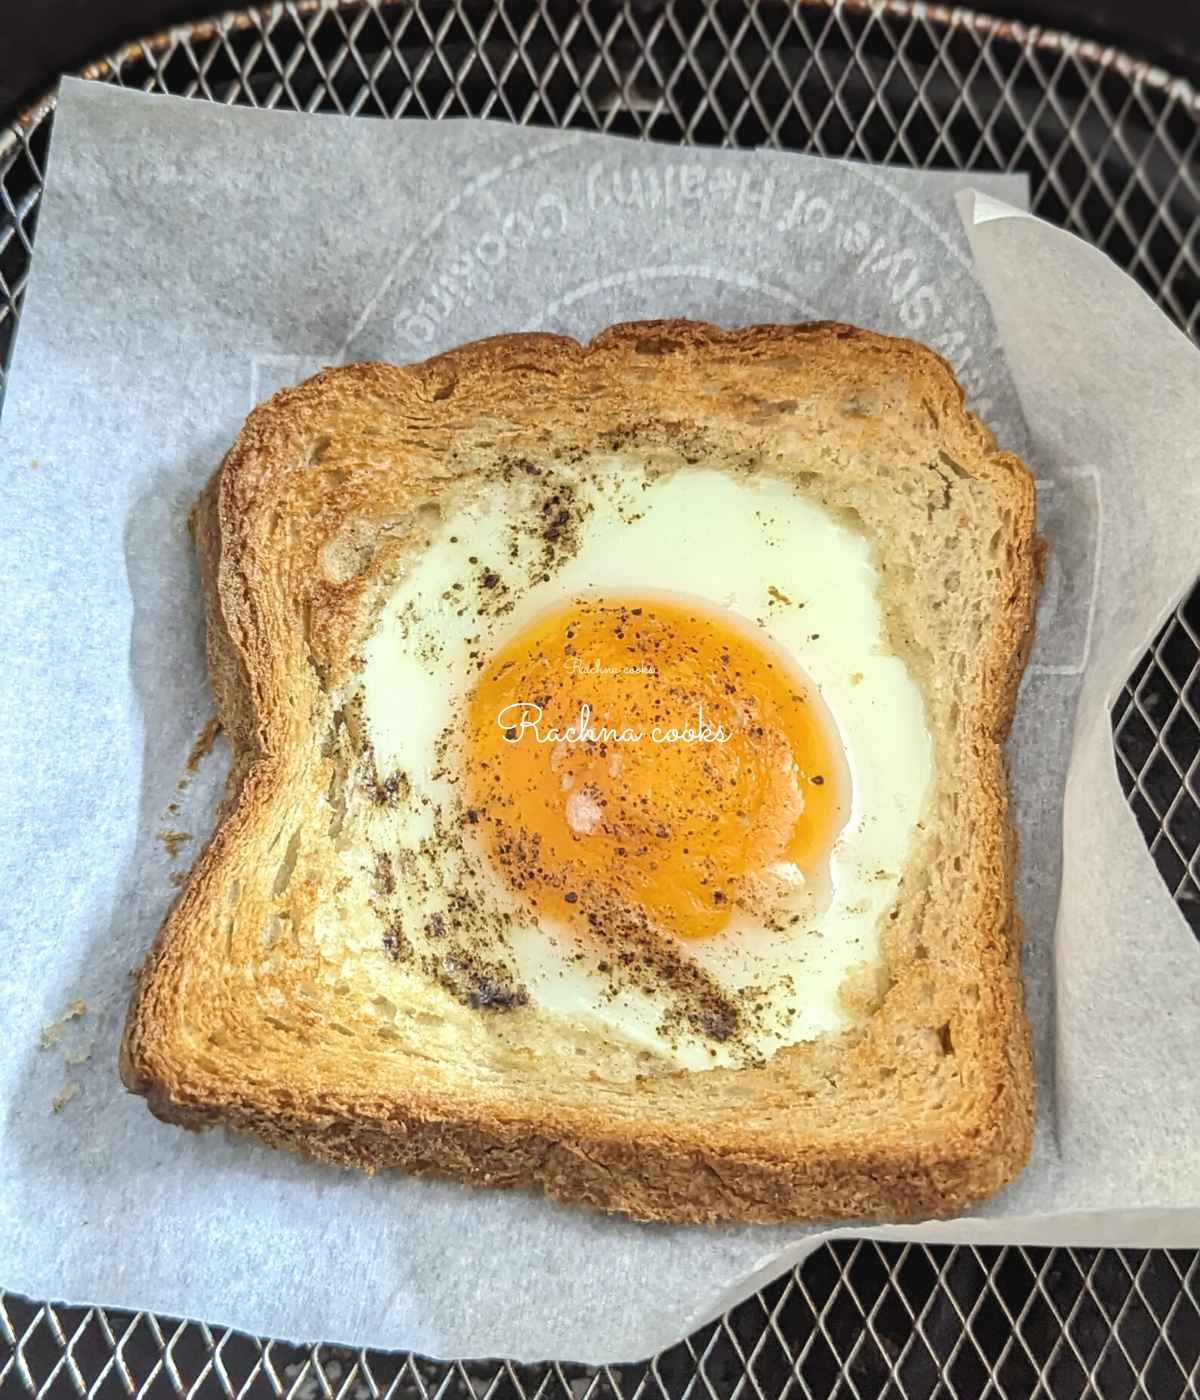 Huevos en una canasta en la freidora.